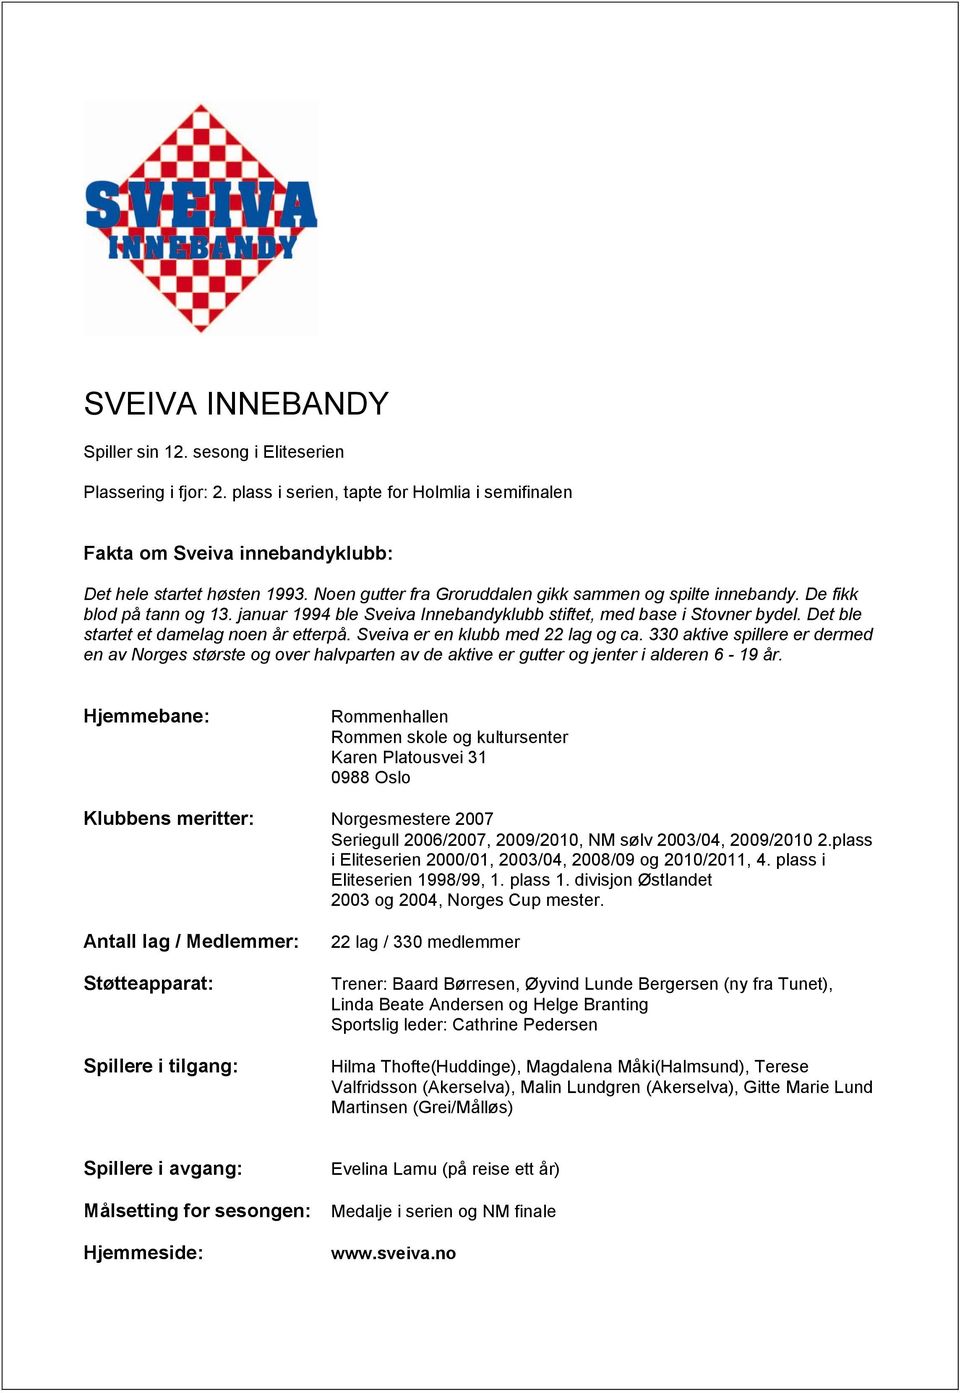 Det ble startet et damelag noen år etterpå. Sveiva er en klubb med 22 lag og ca.